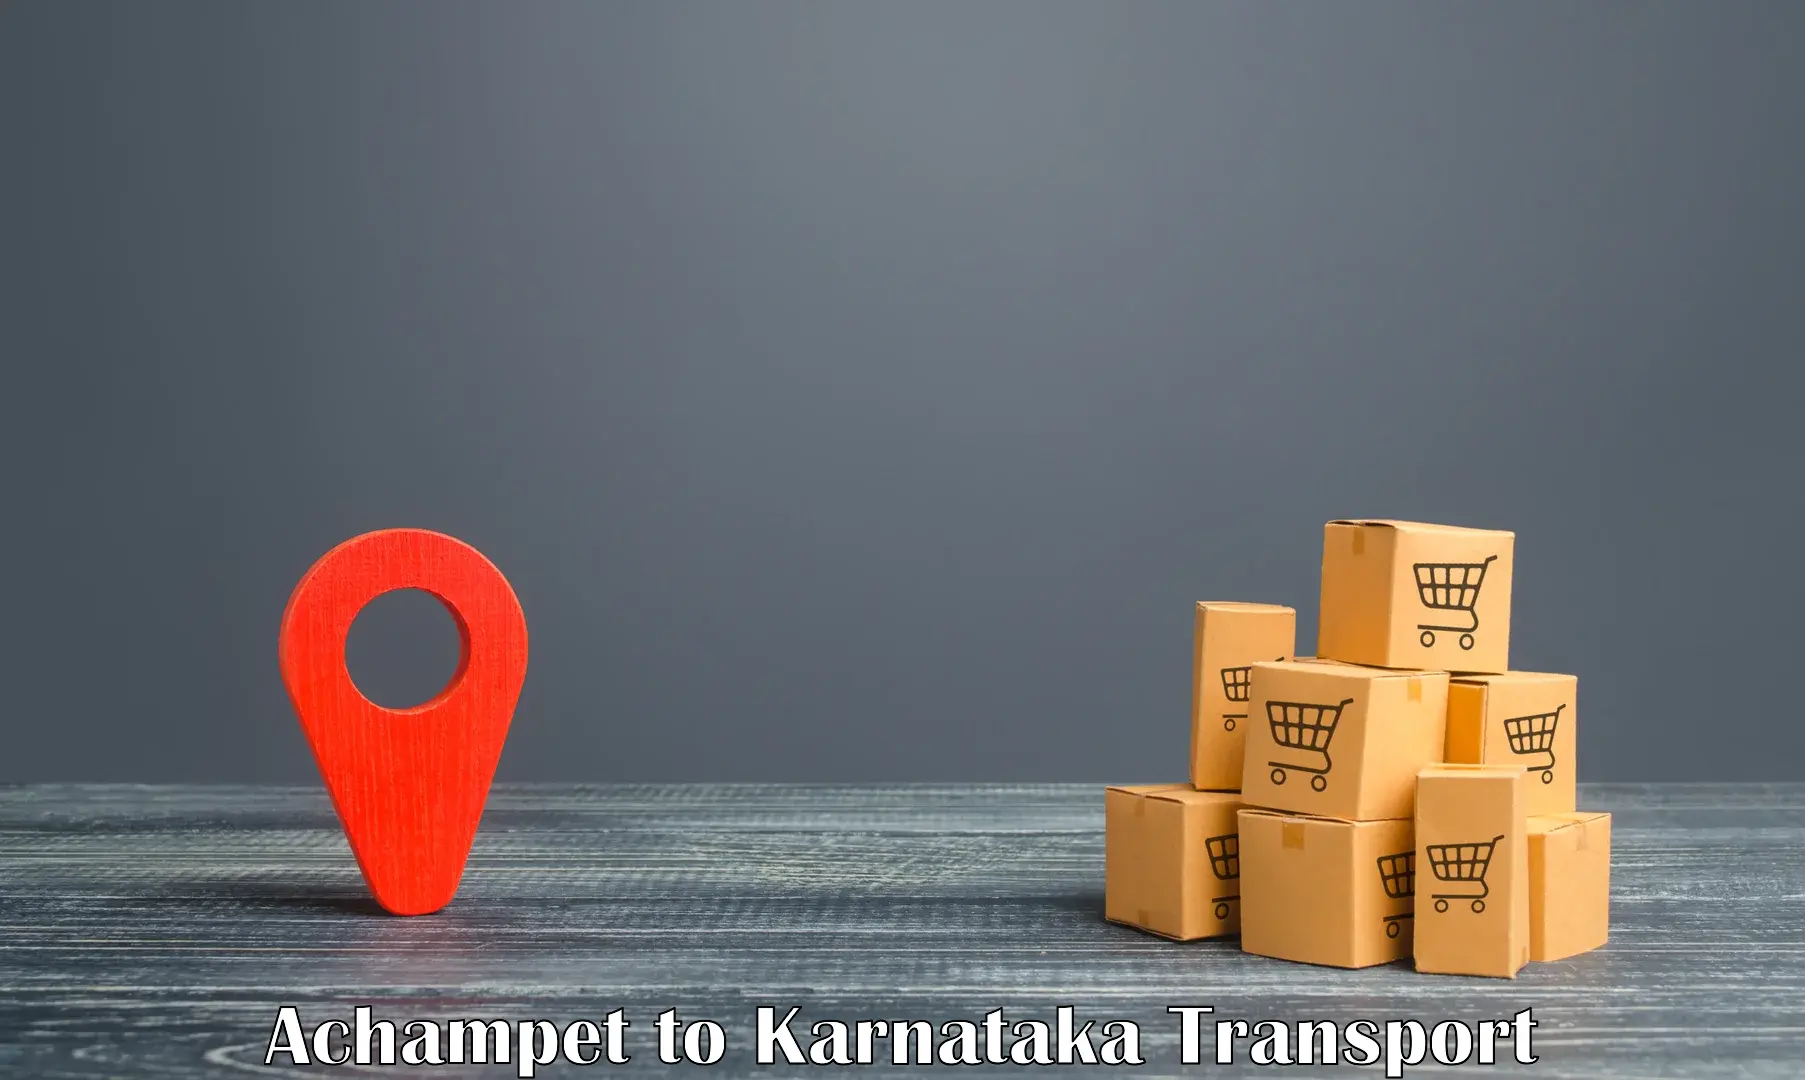 Furniture transport service Achampet to Karnataka